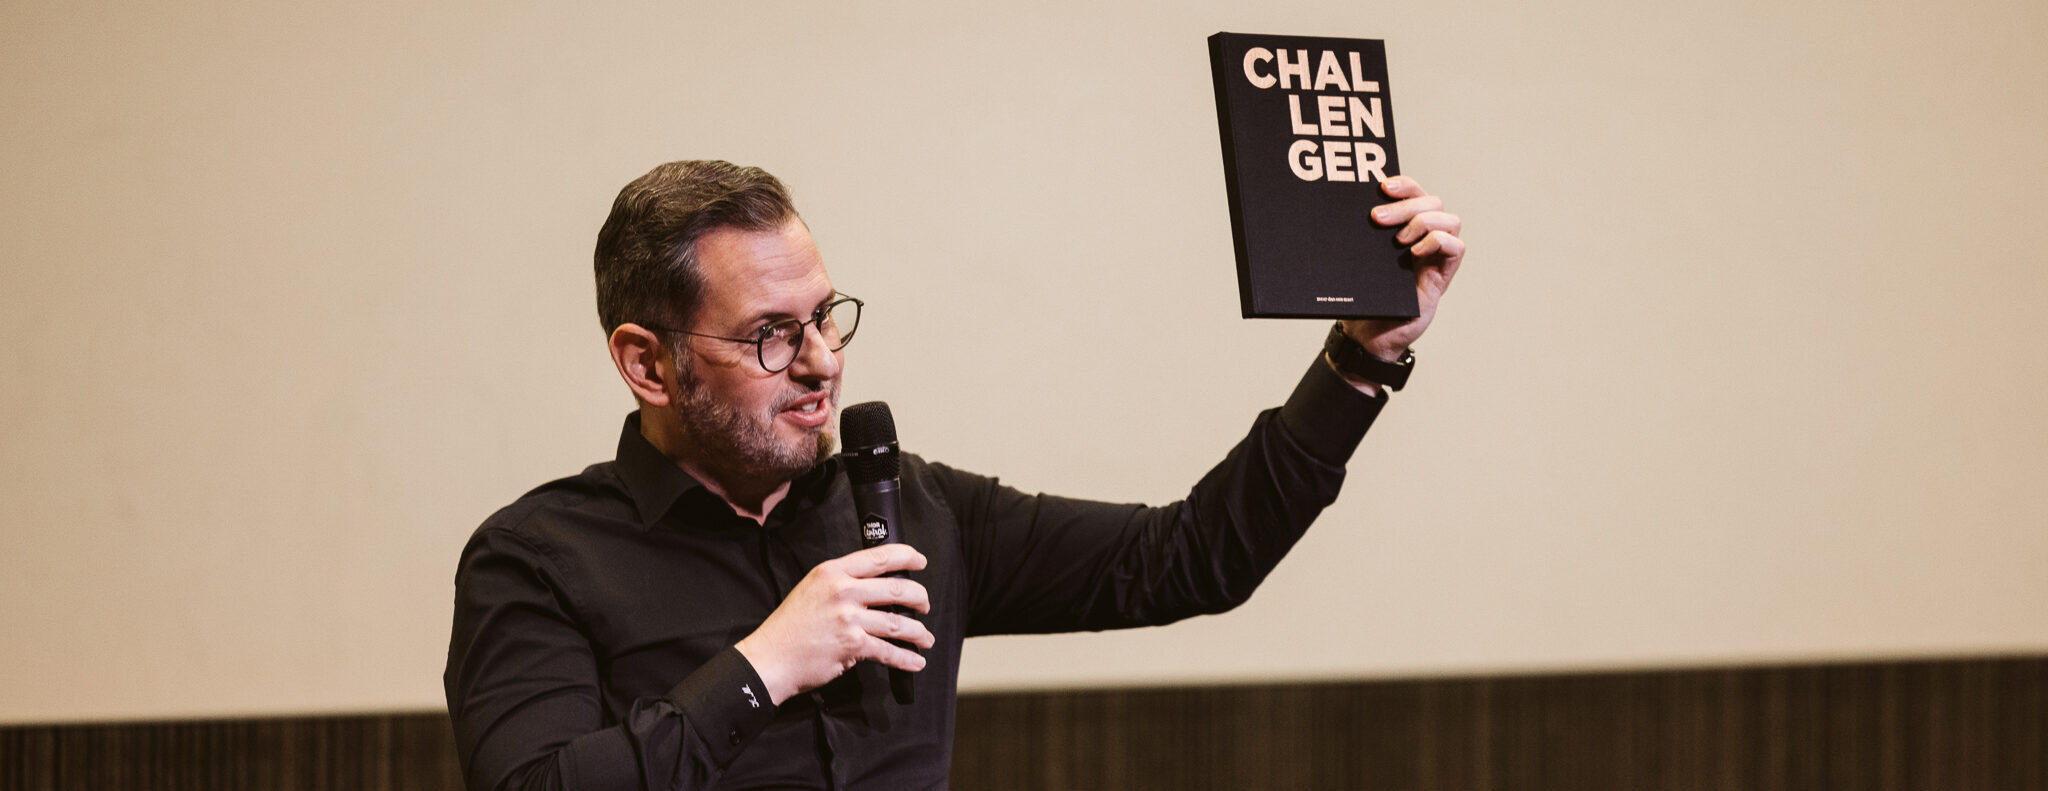 Kristof Meesters, CEO van Van Havermaet, toont tijdens een presentatie die hij geeft het boek 'Challenger'. Hij draagt een zwart hemd en bril, en spreekt in een microfoon.